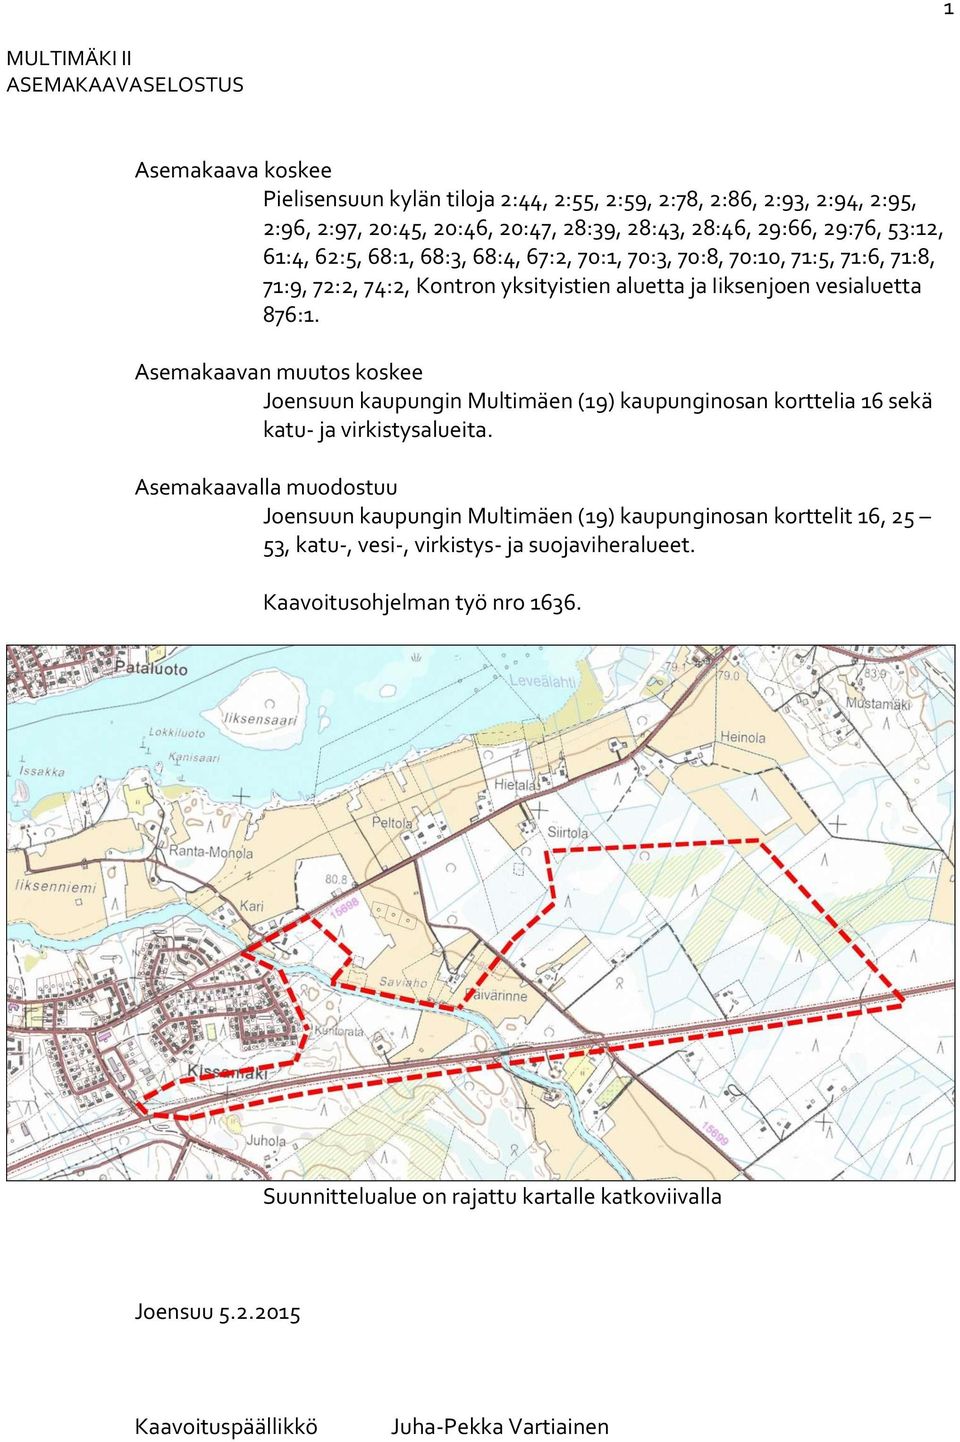 Asemakaavan muutos koskee Joensuun kaupungin Multimäen () kaupunginosan korttelia sekä katu- ja virkistysalueita.